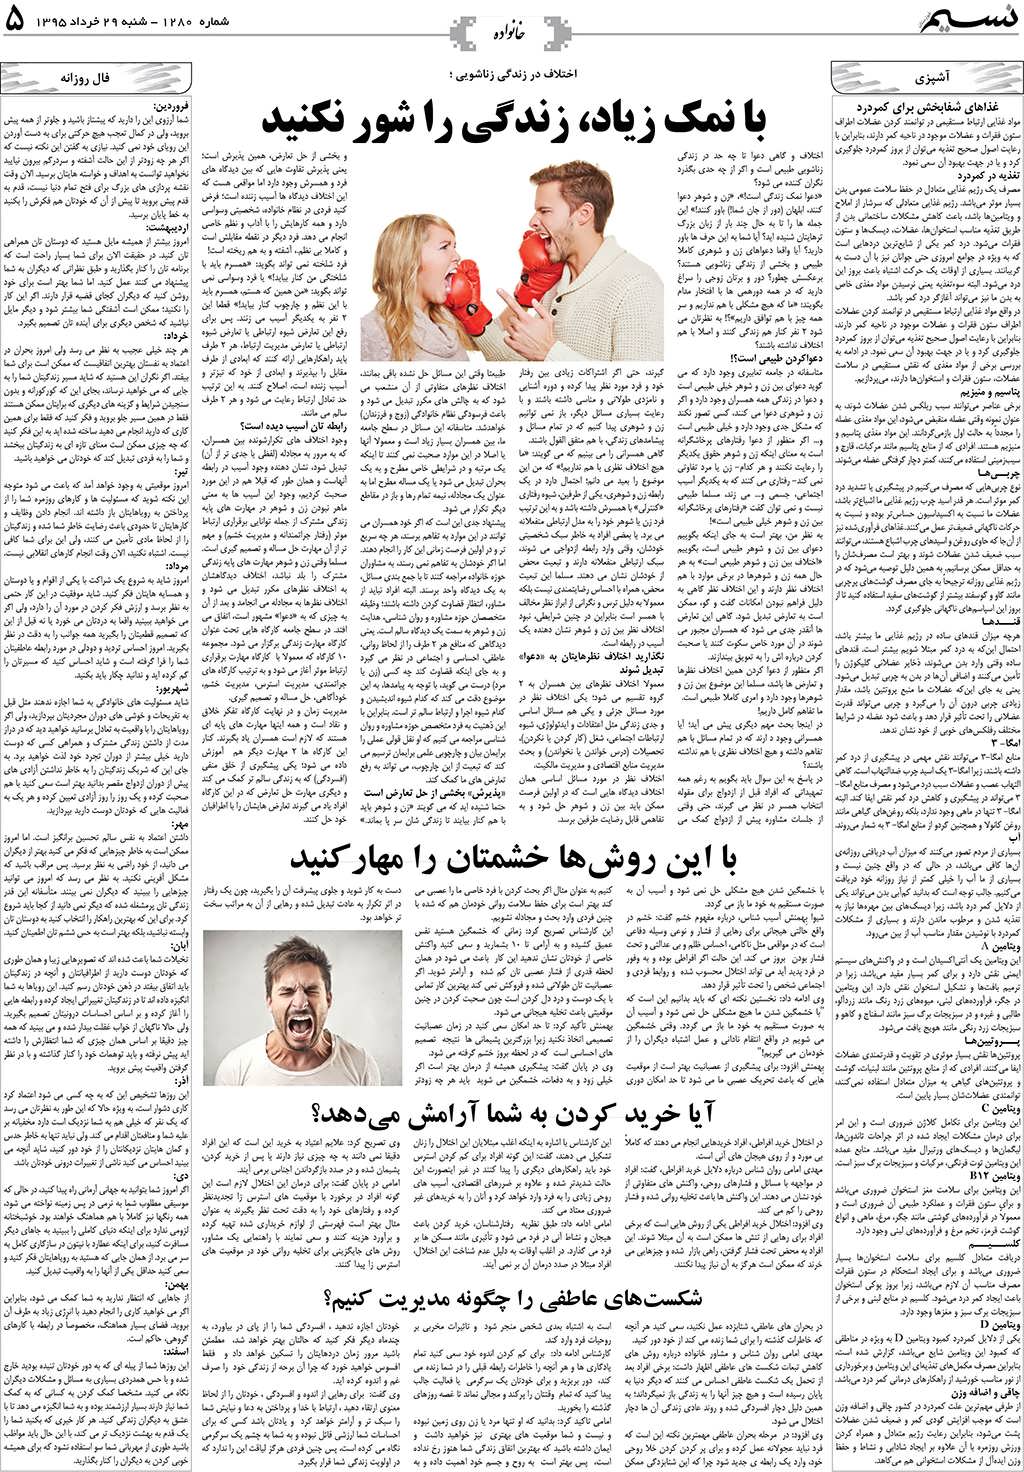 صفحه خانواده روزنامه نسیم شماره 1280